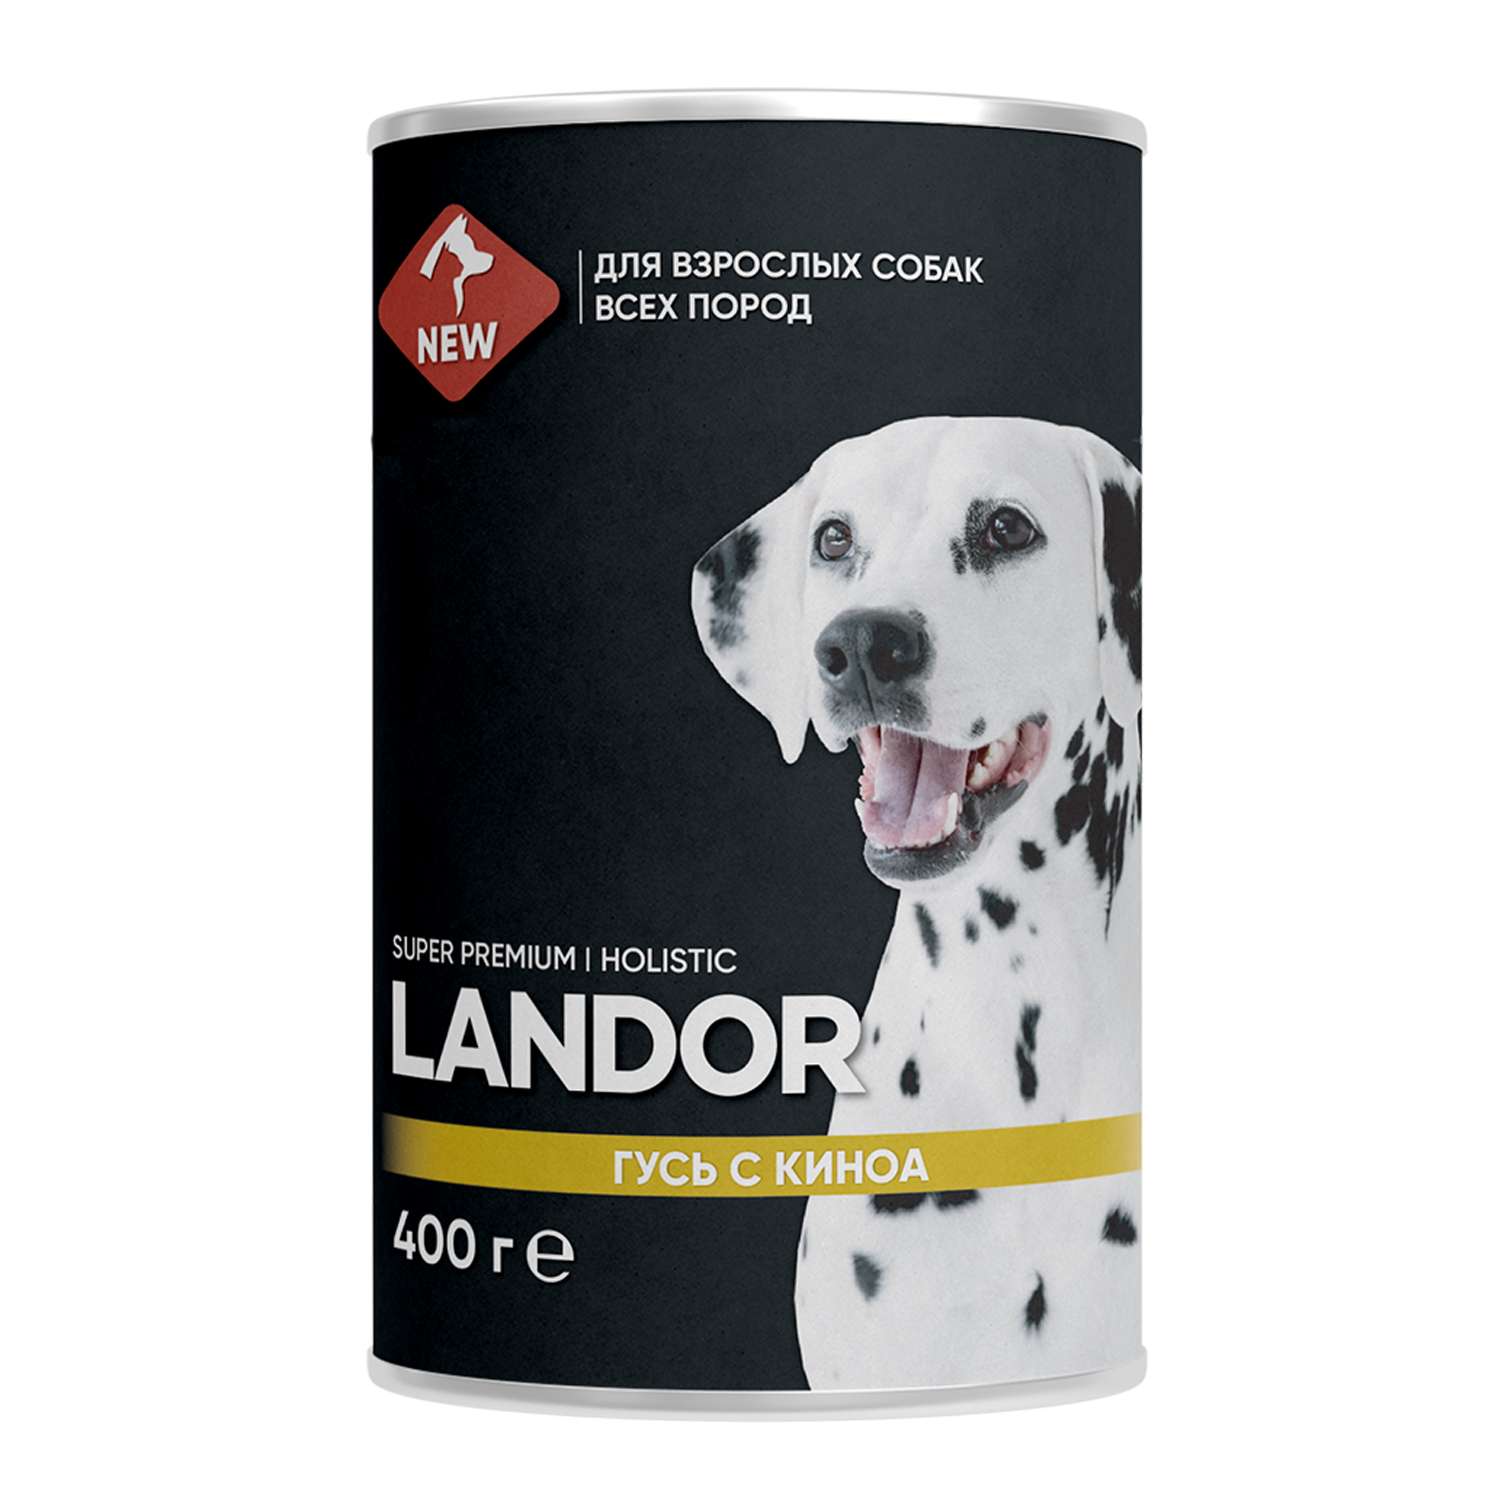 Корм для собак Landor 0.4кг всех пород гусь с киноа ж/б - фото 1